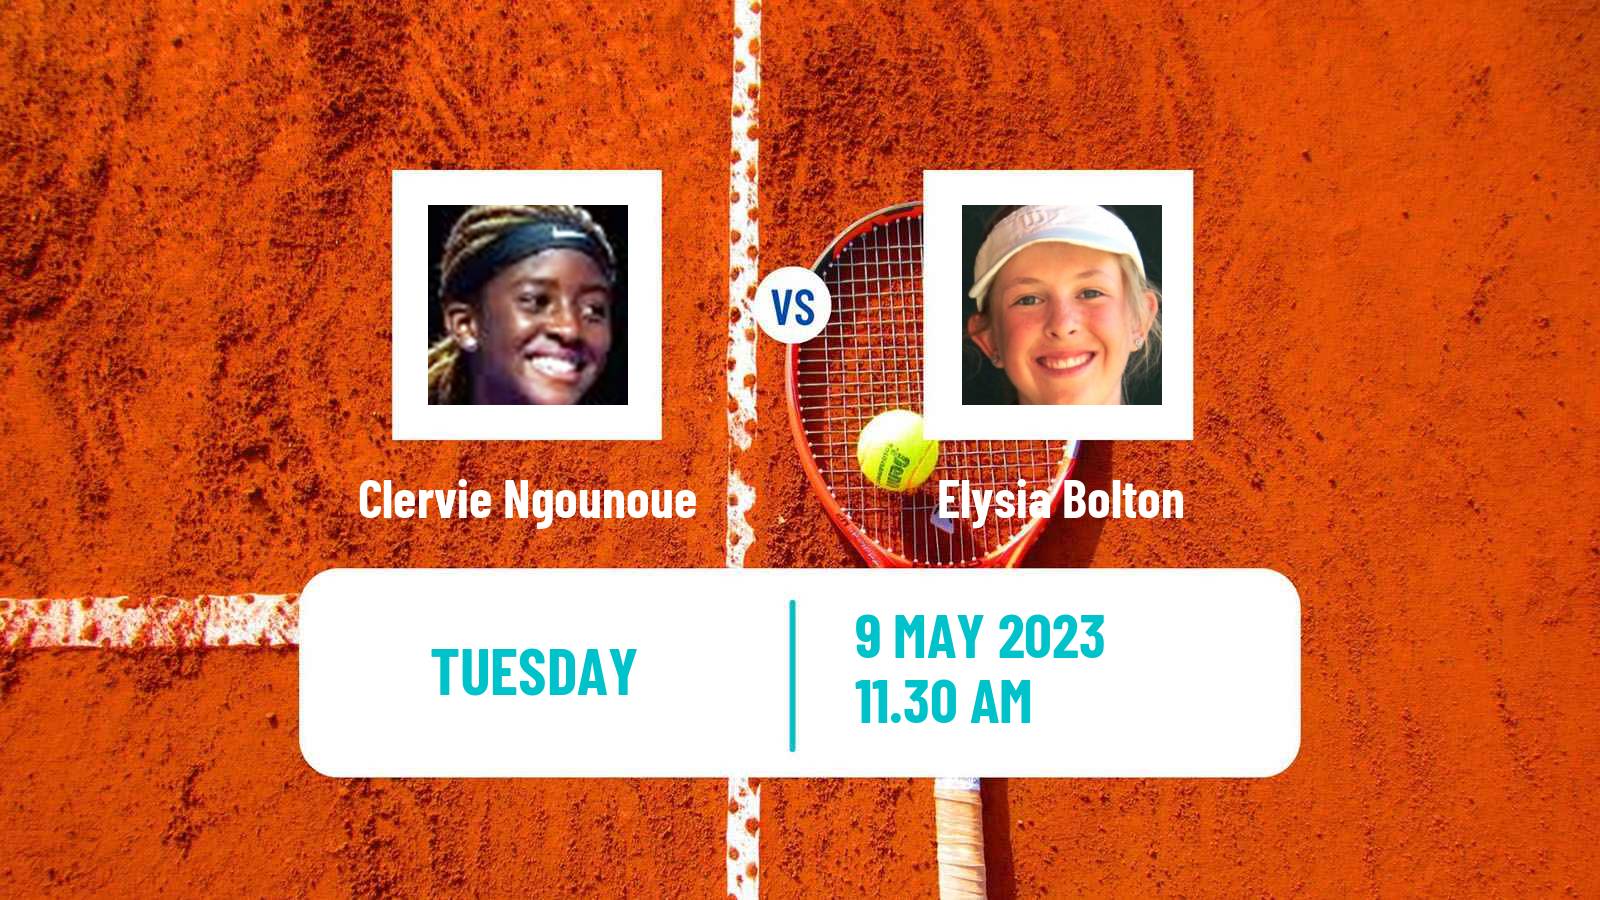 Tennis ITF Tournaments Clervie Ngounoue - Elysia Bolton